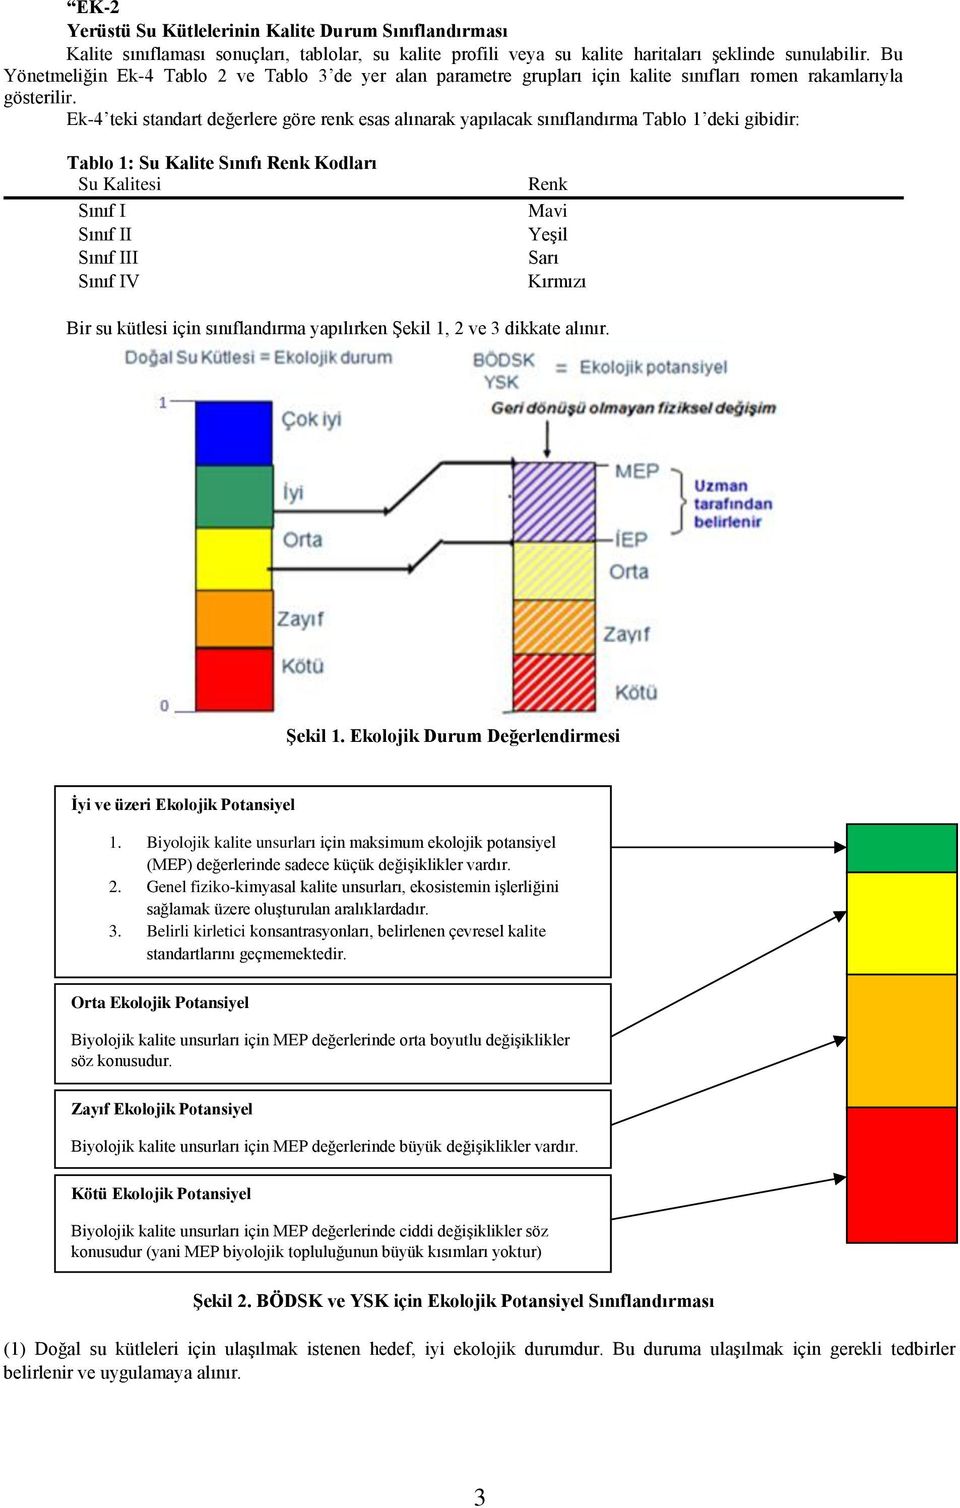 Ek-4 teki standart değerlere göre renk esas alınarak yapılacak sınıflandırma Tablo 1 deki gibidir: Tablo 1: Su Kalite Sınıfı Renk Kodları Su Kalitesi Sınıf I Sınıf II Sınıf III Sınıf IV Renk Mavi